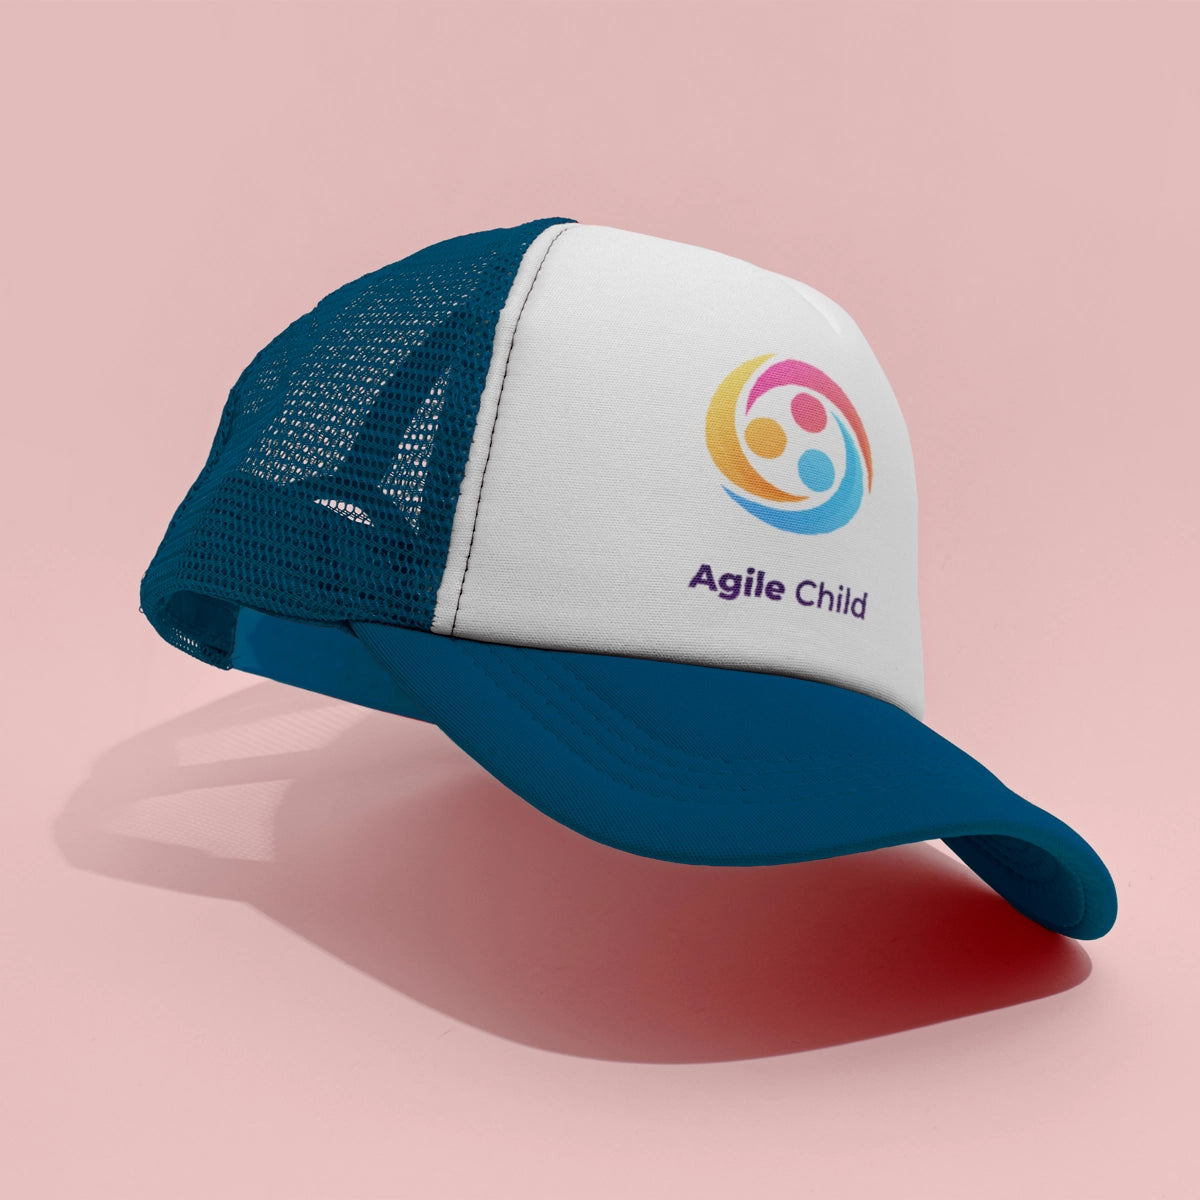 agilechild.com